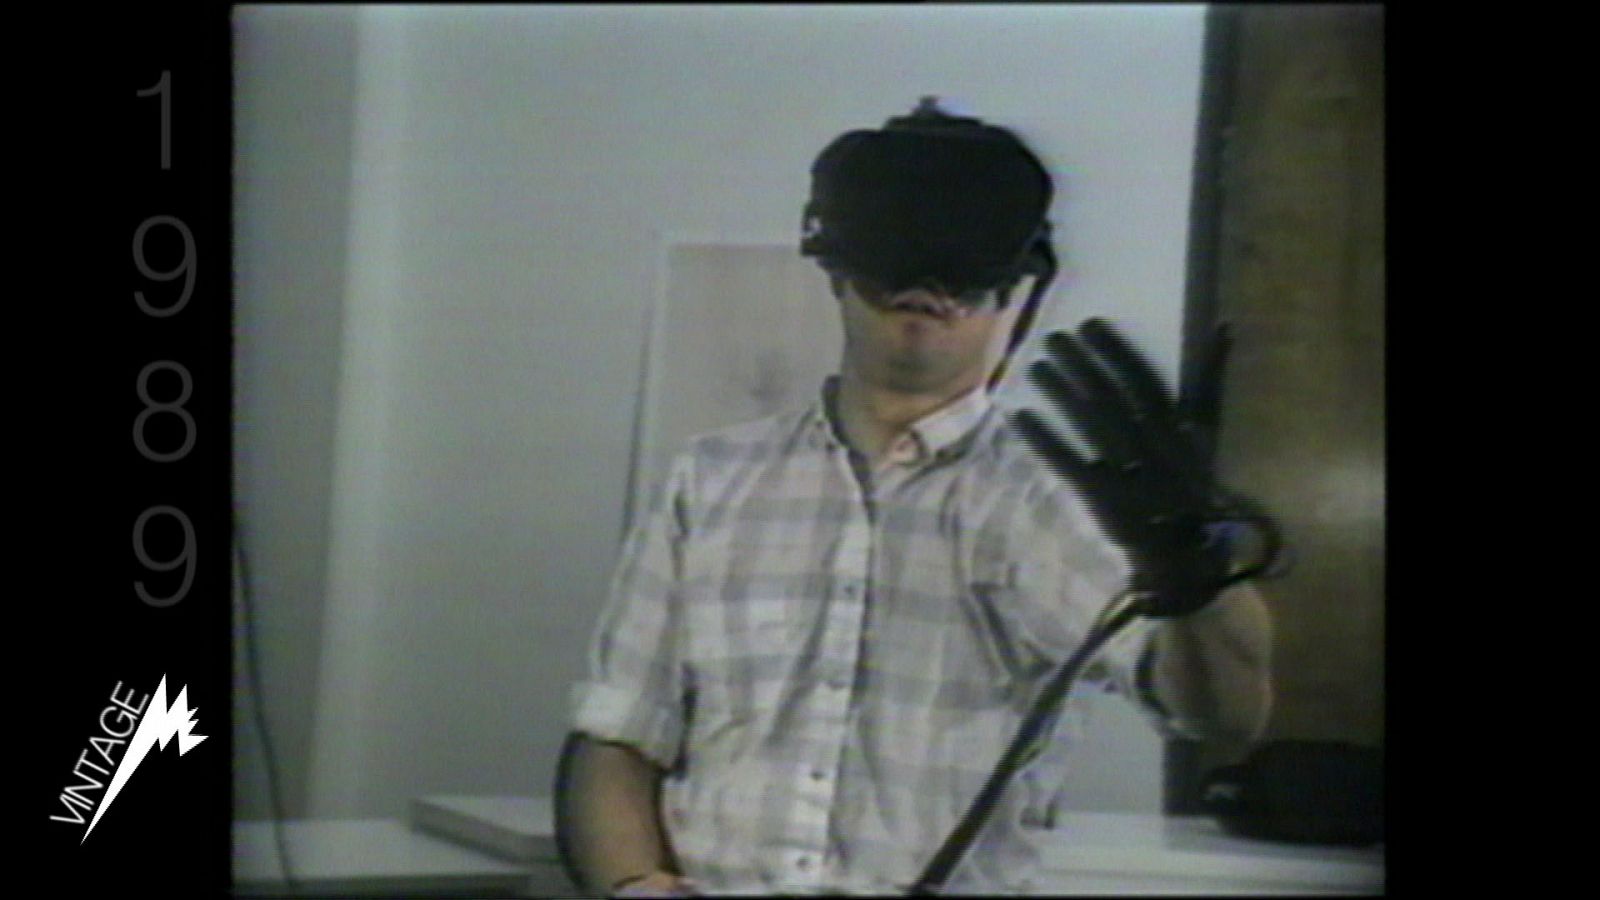 Presentación, en Imagina90, del primer sistema de realidad virtual por parte de Chuck Blanchard de VPL Research.